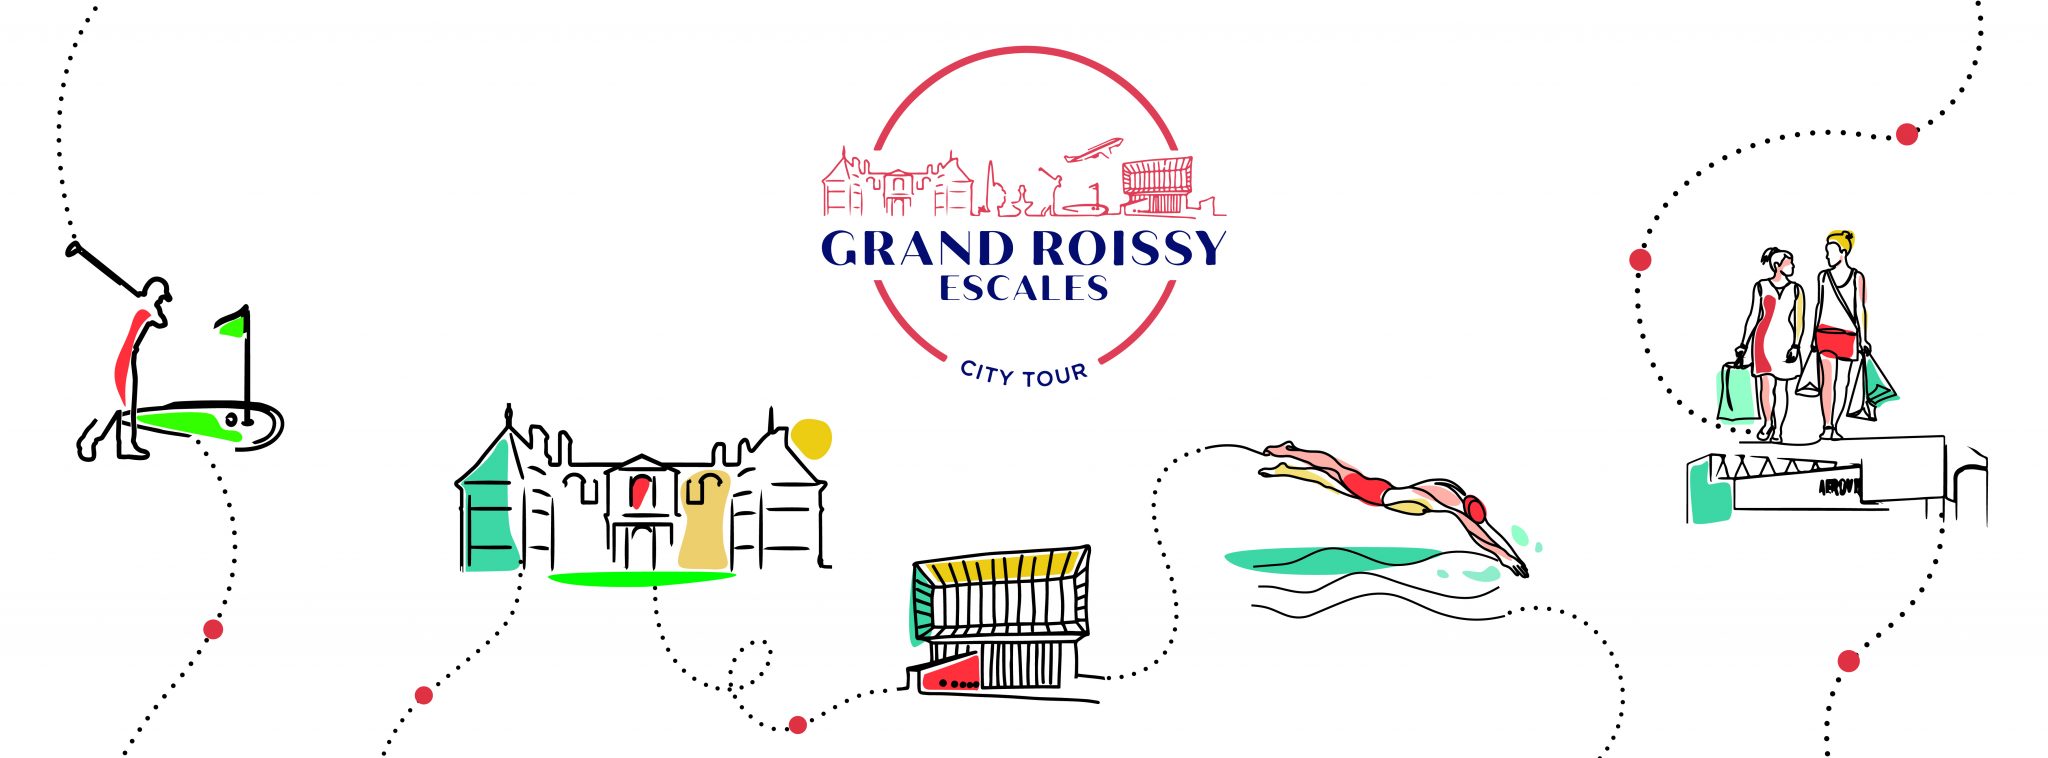 Het VVV-kantoor Grand Roissy lanceert zijn stadstour